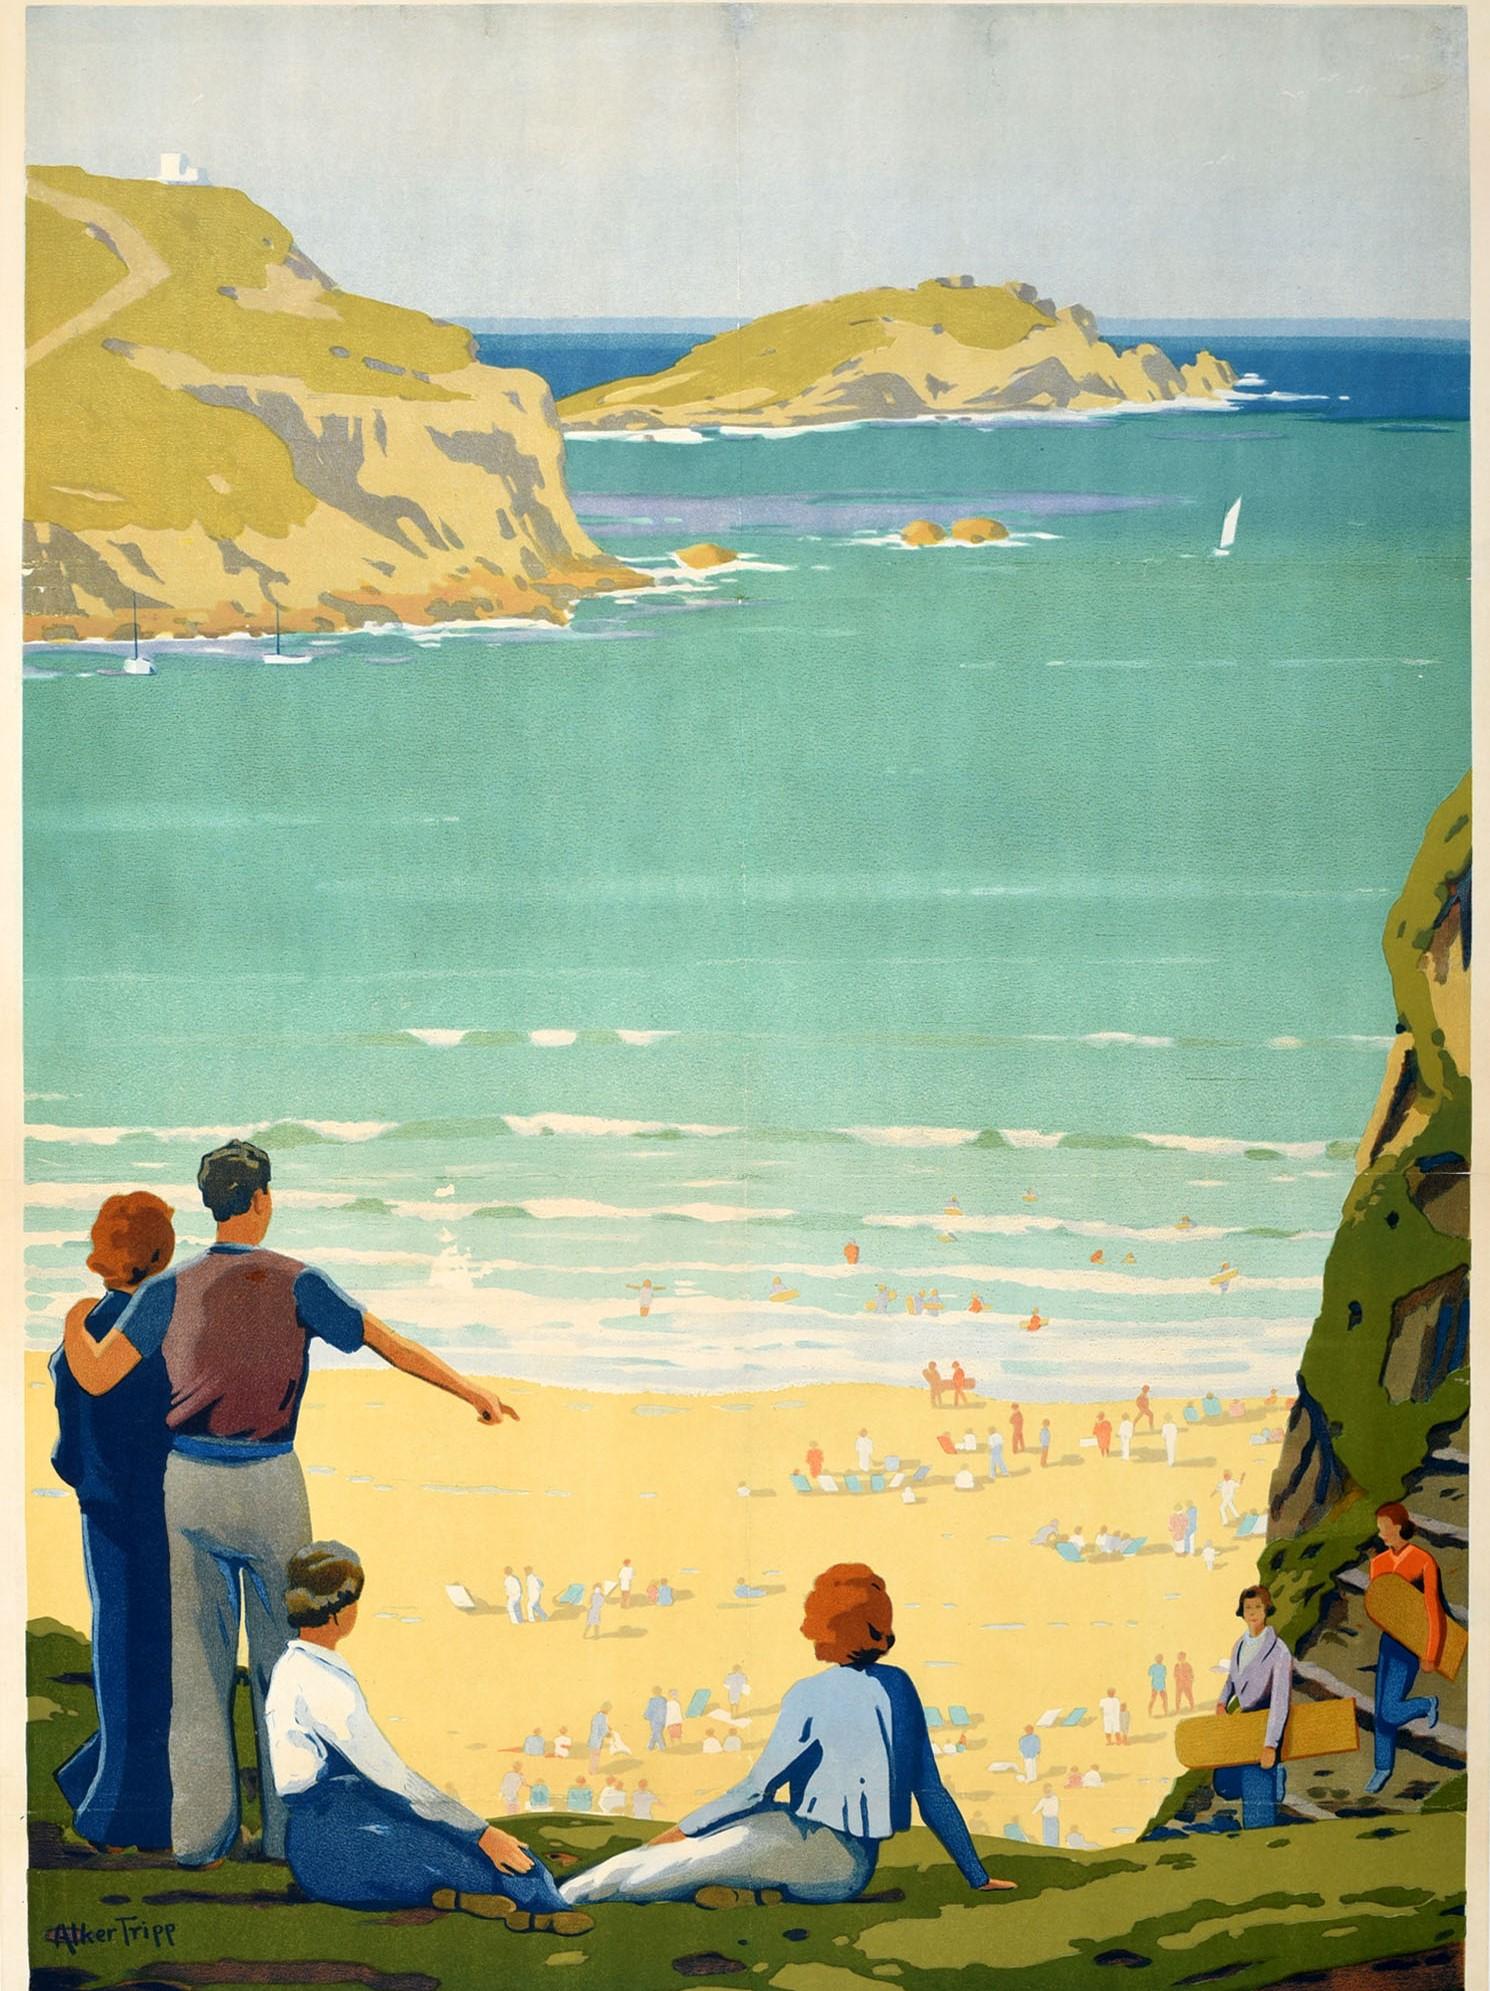 Affiche originale de voyage en train pour Newquay On The Cornish Coast émise par GWR Great Western Railway représentant une vue panoramique de personnes profitant de leurs vacances sur la plage de sable et nageant dans les vagues avec un voilier en